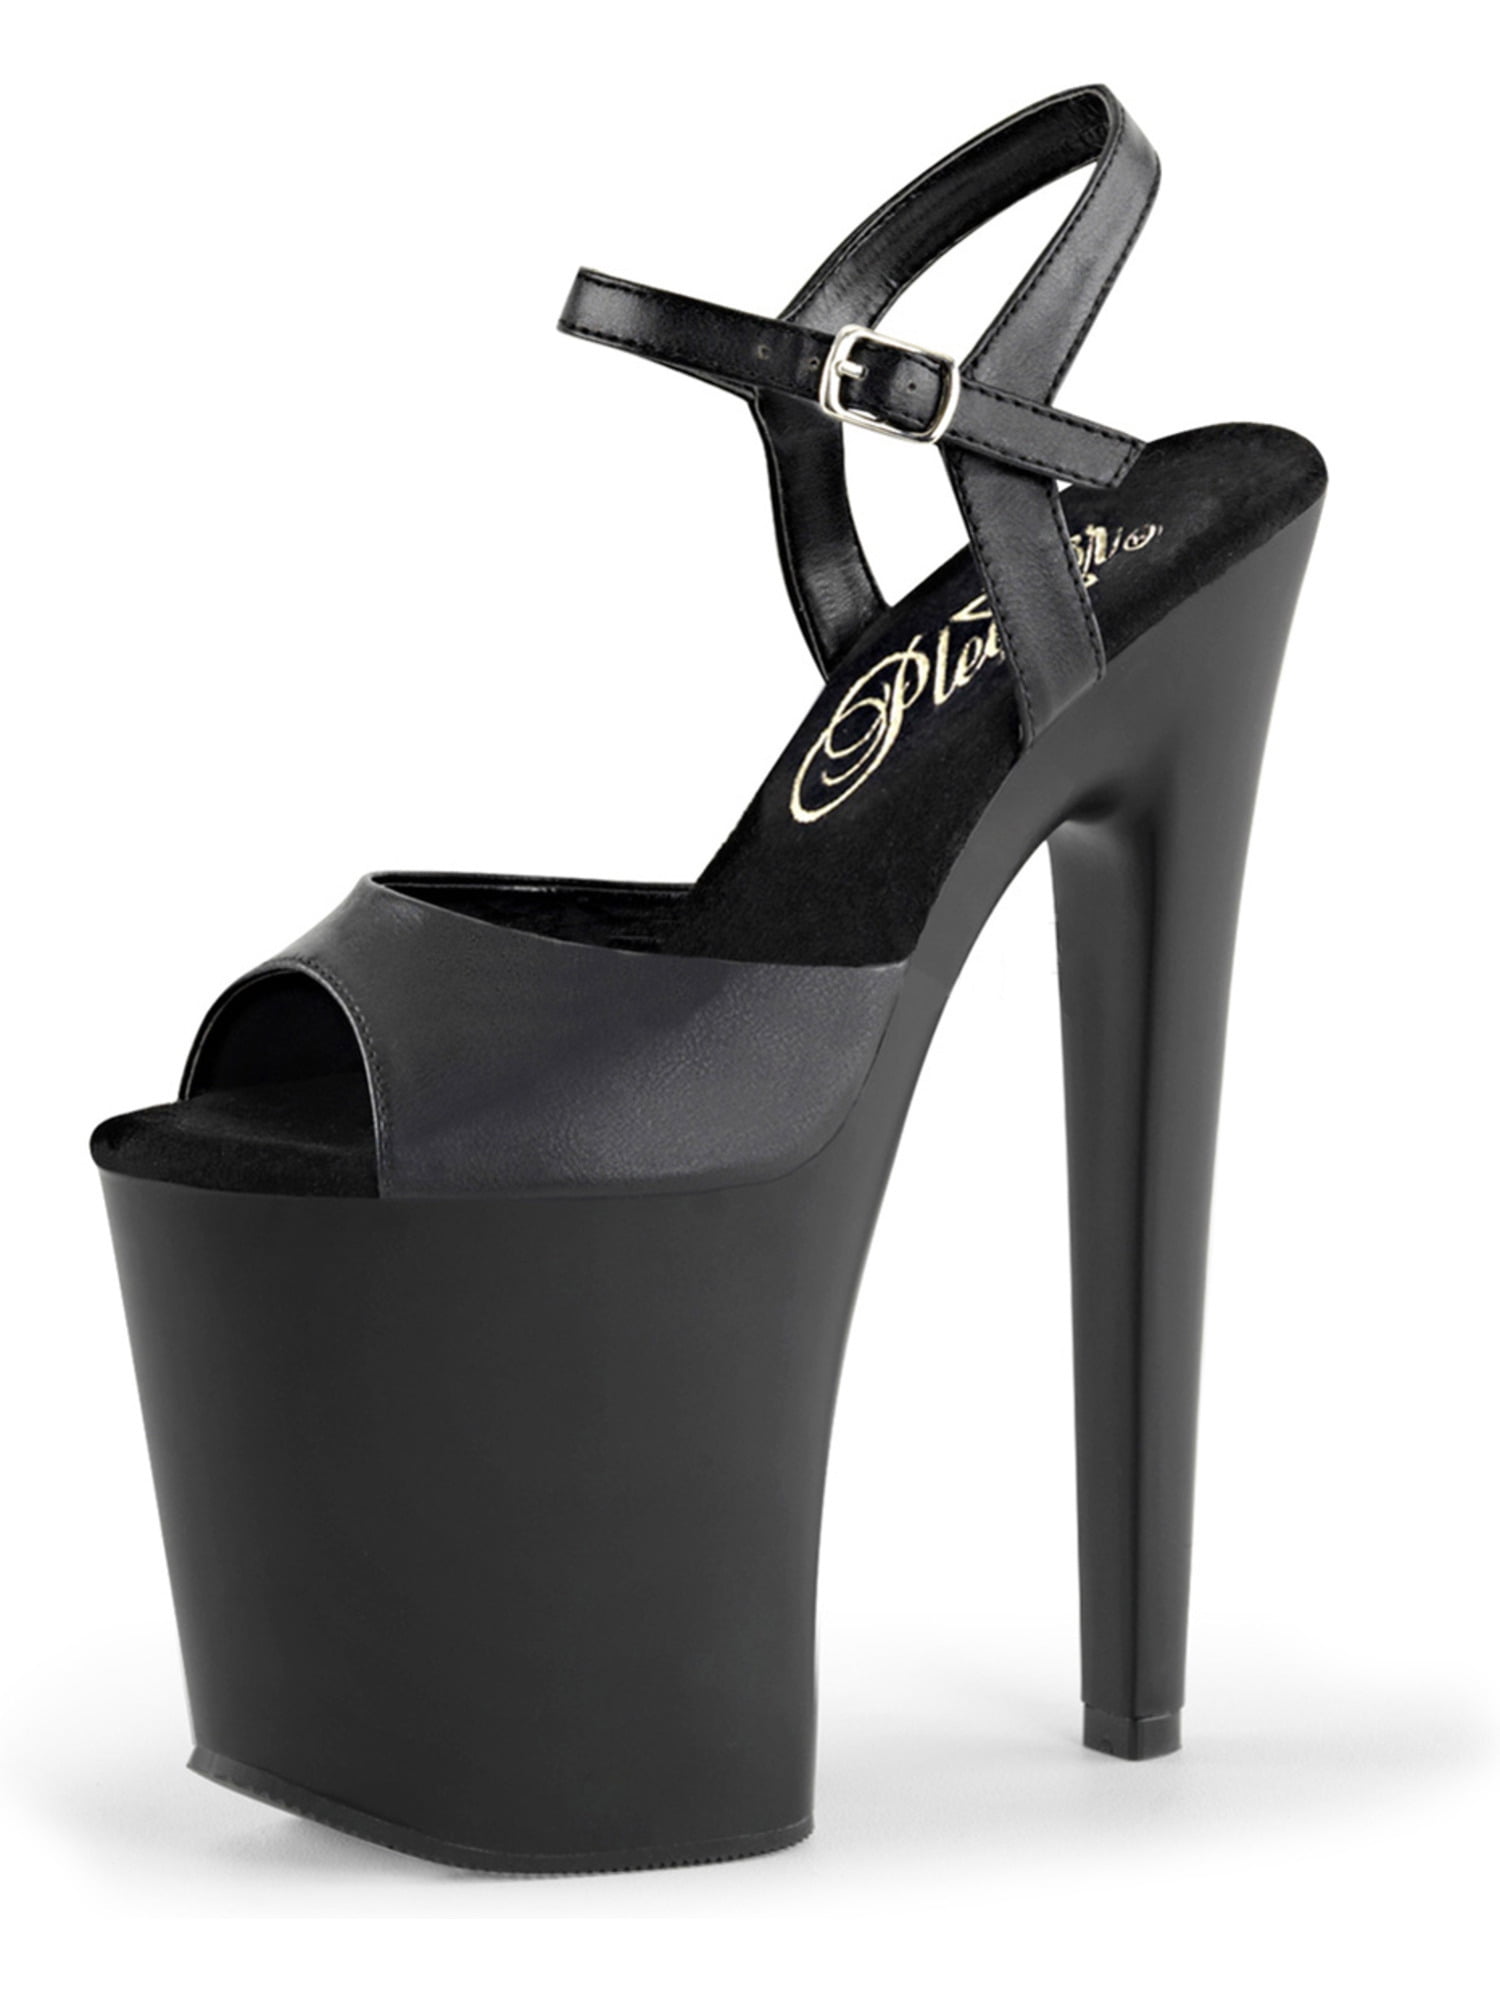 women's black open toe heels